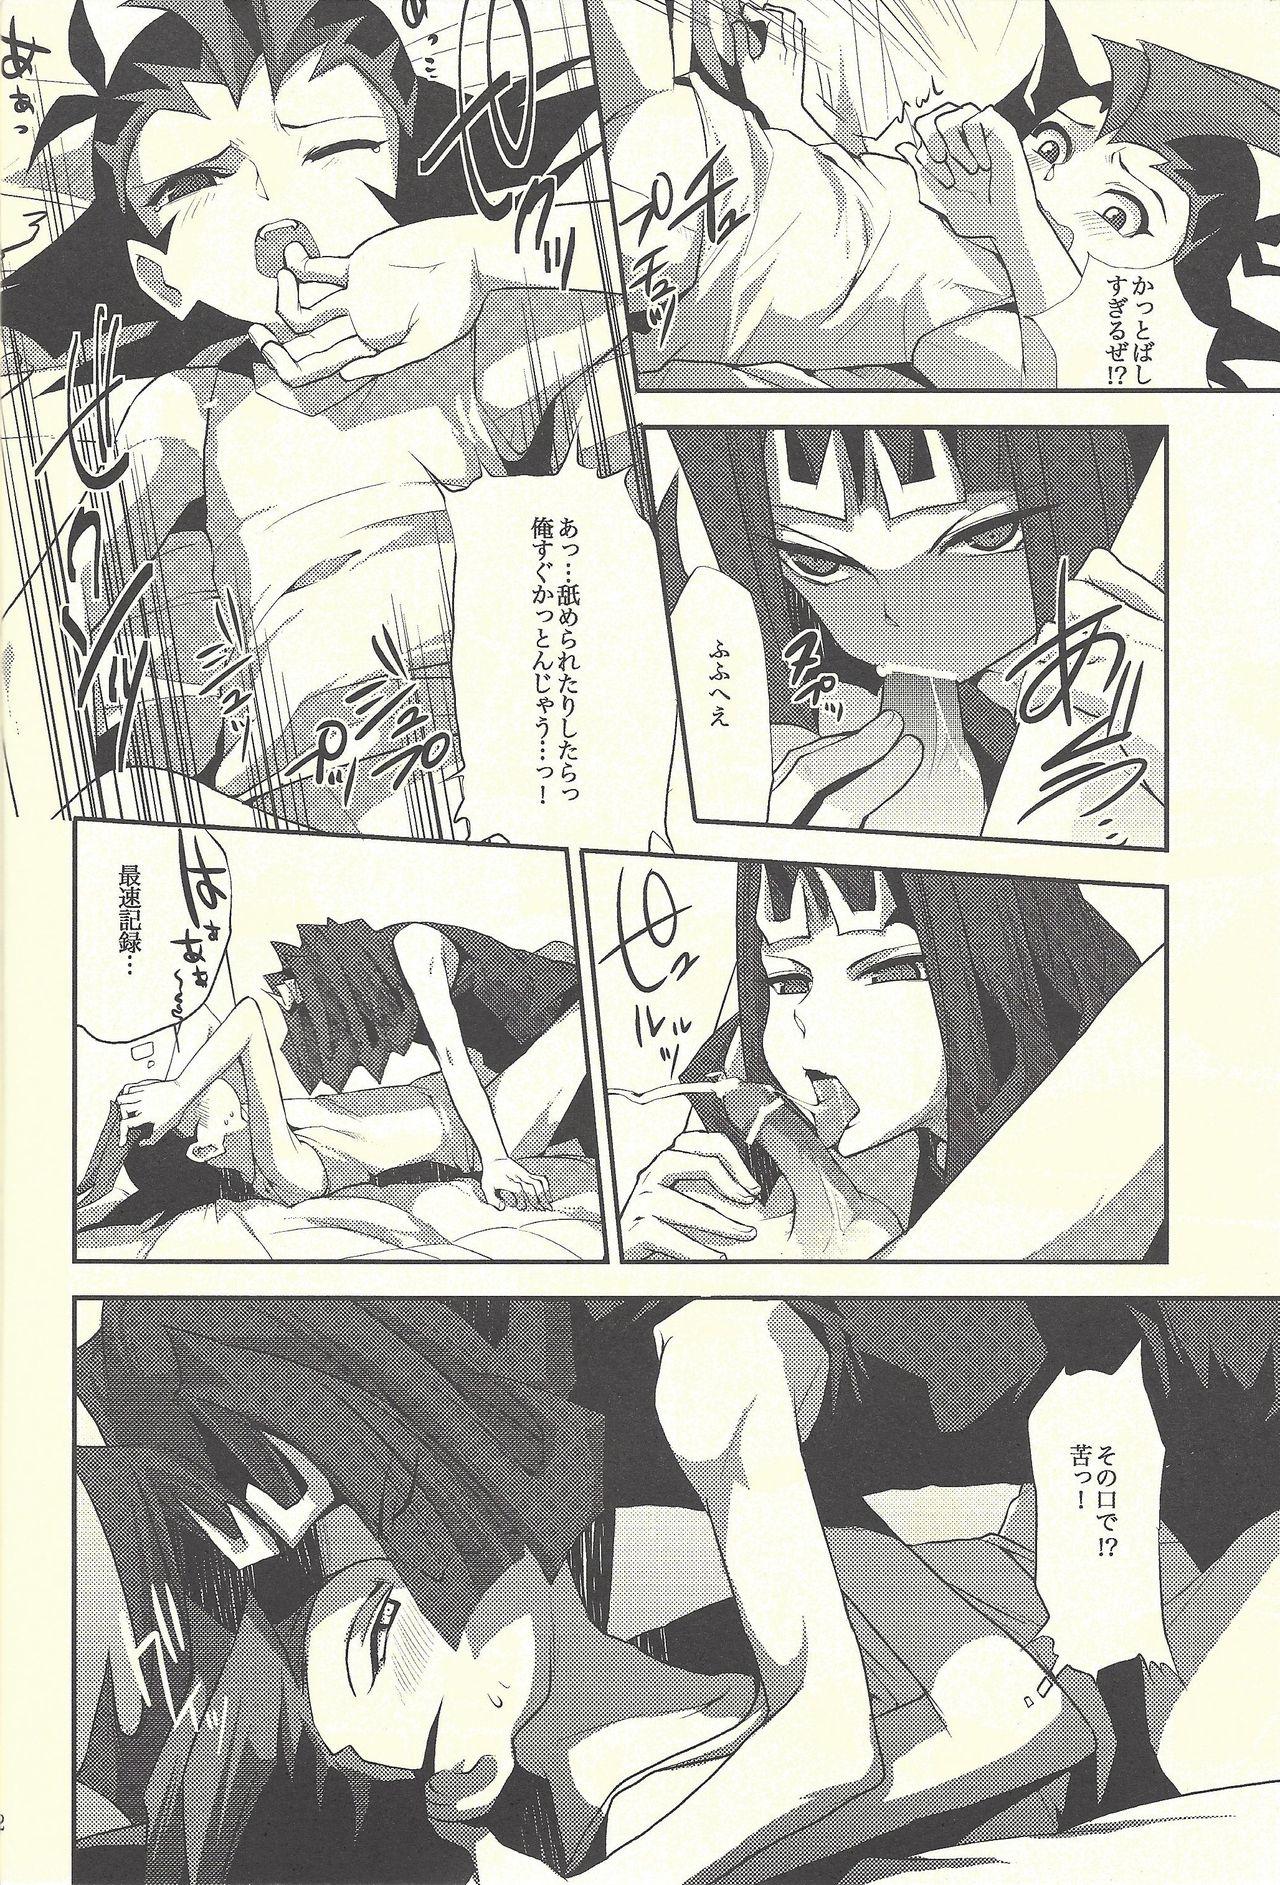 Hot Women Having Sex Boku-tachi no daishippai - Yu gi oh zexal Juicy - Page 11